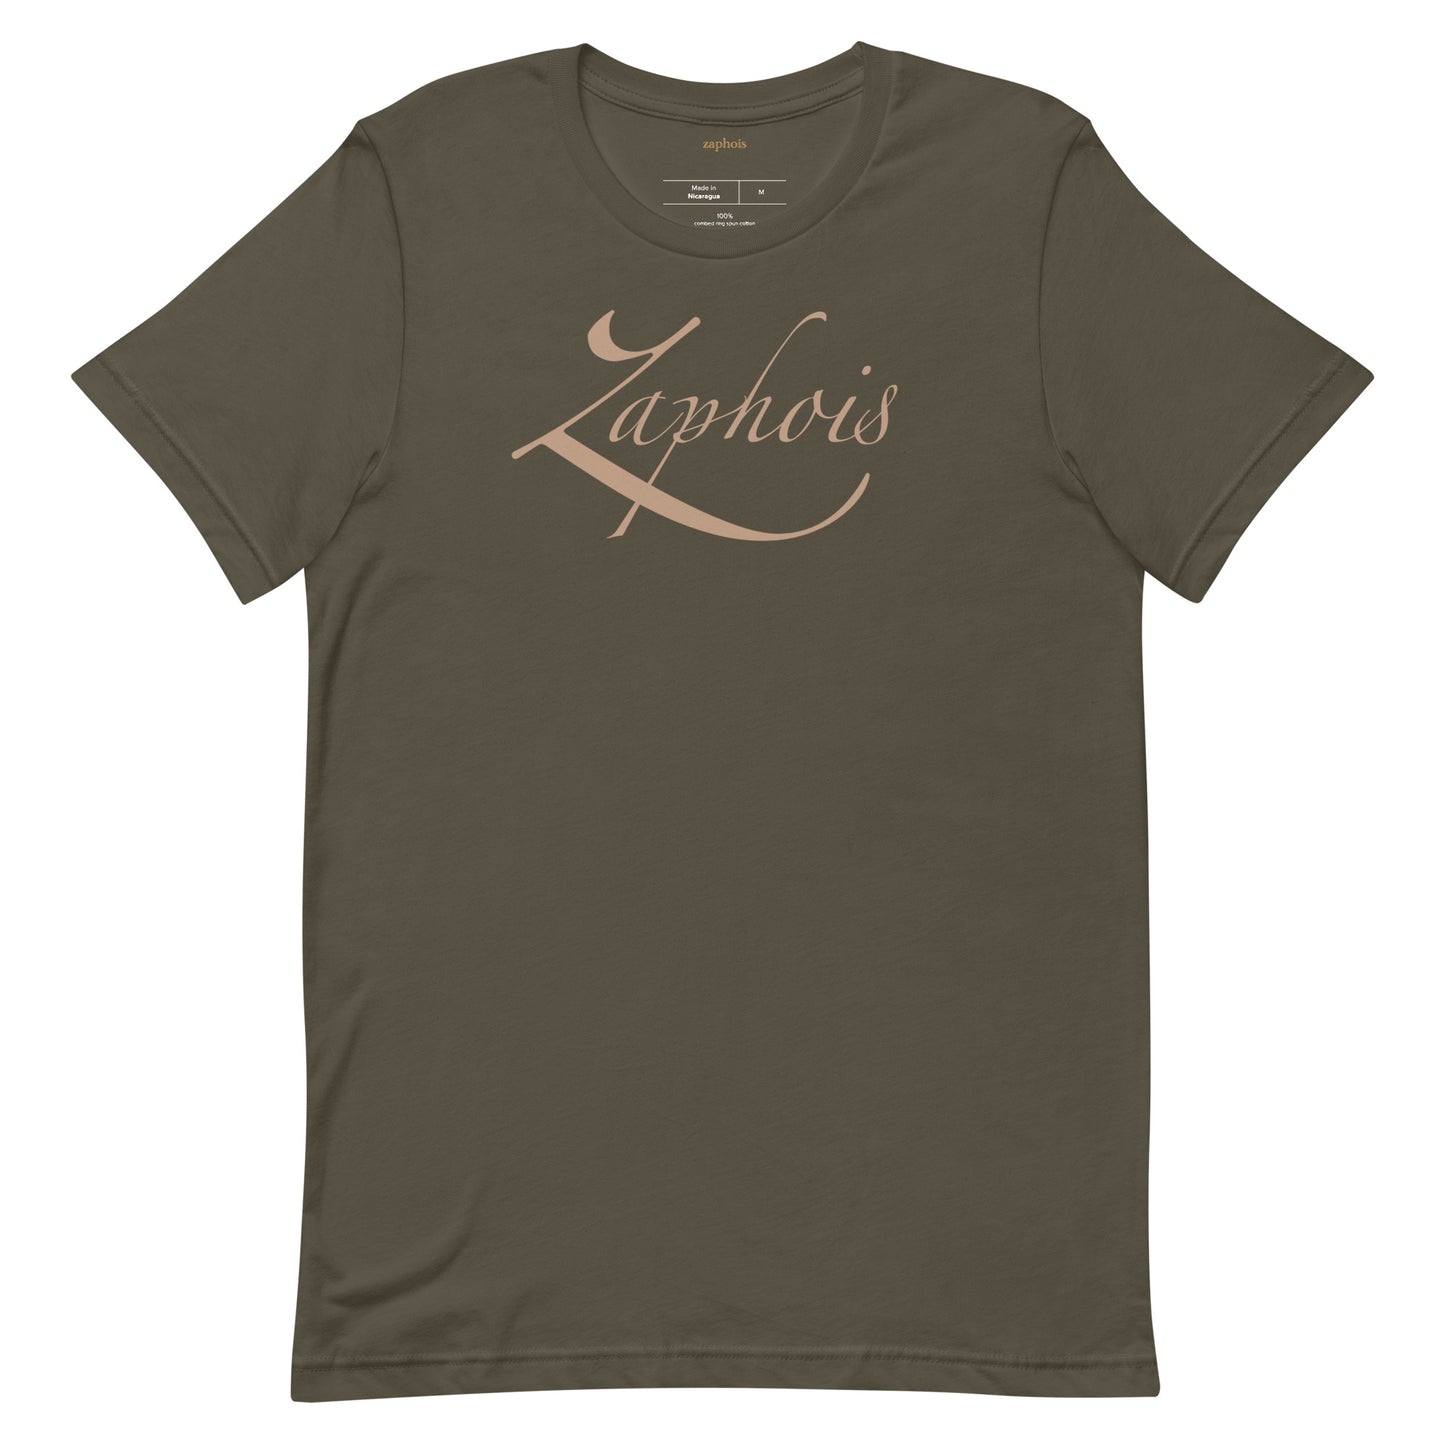 zaphois signature olive shirt